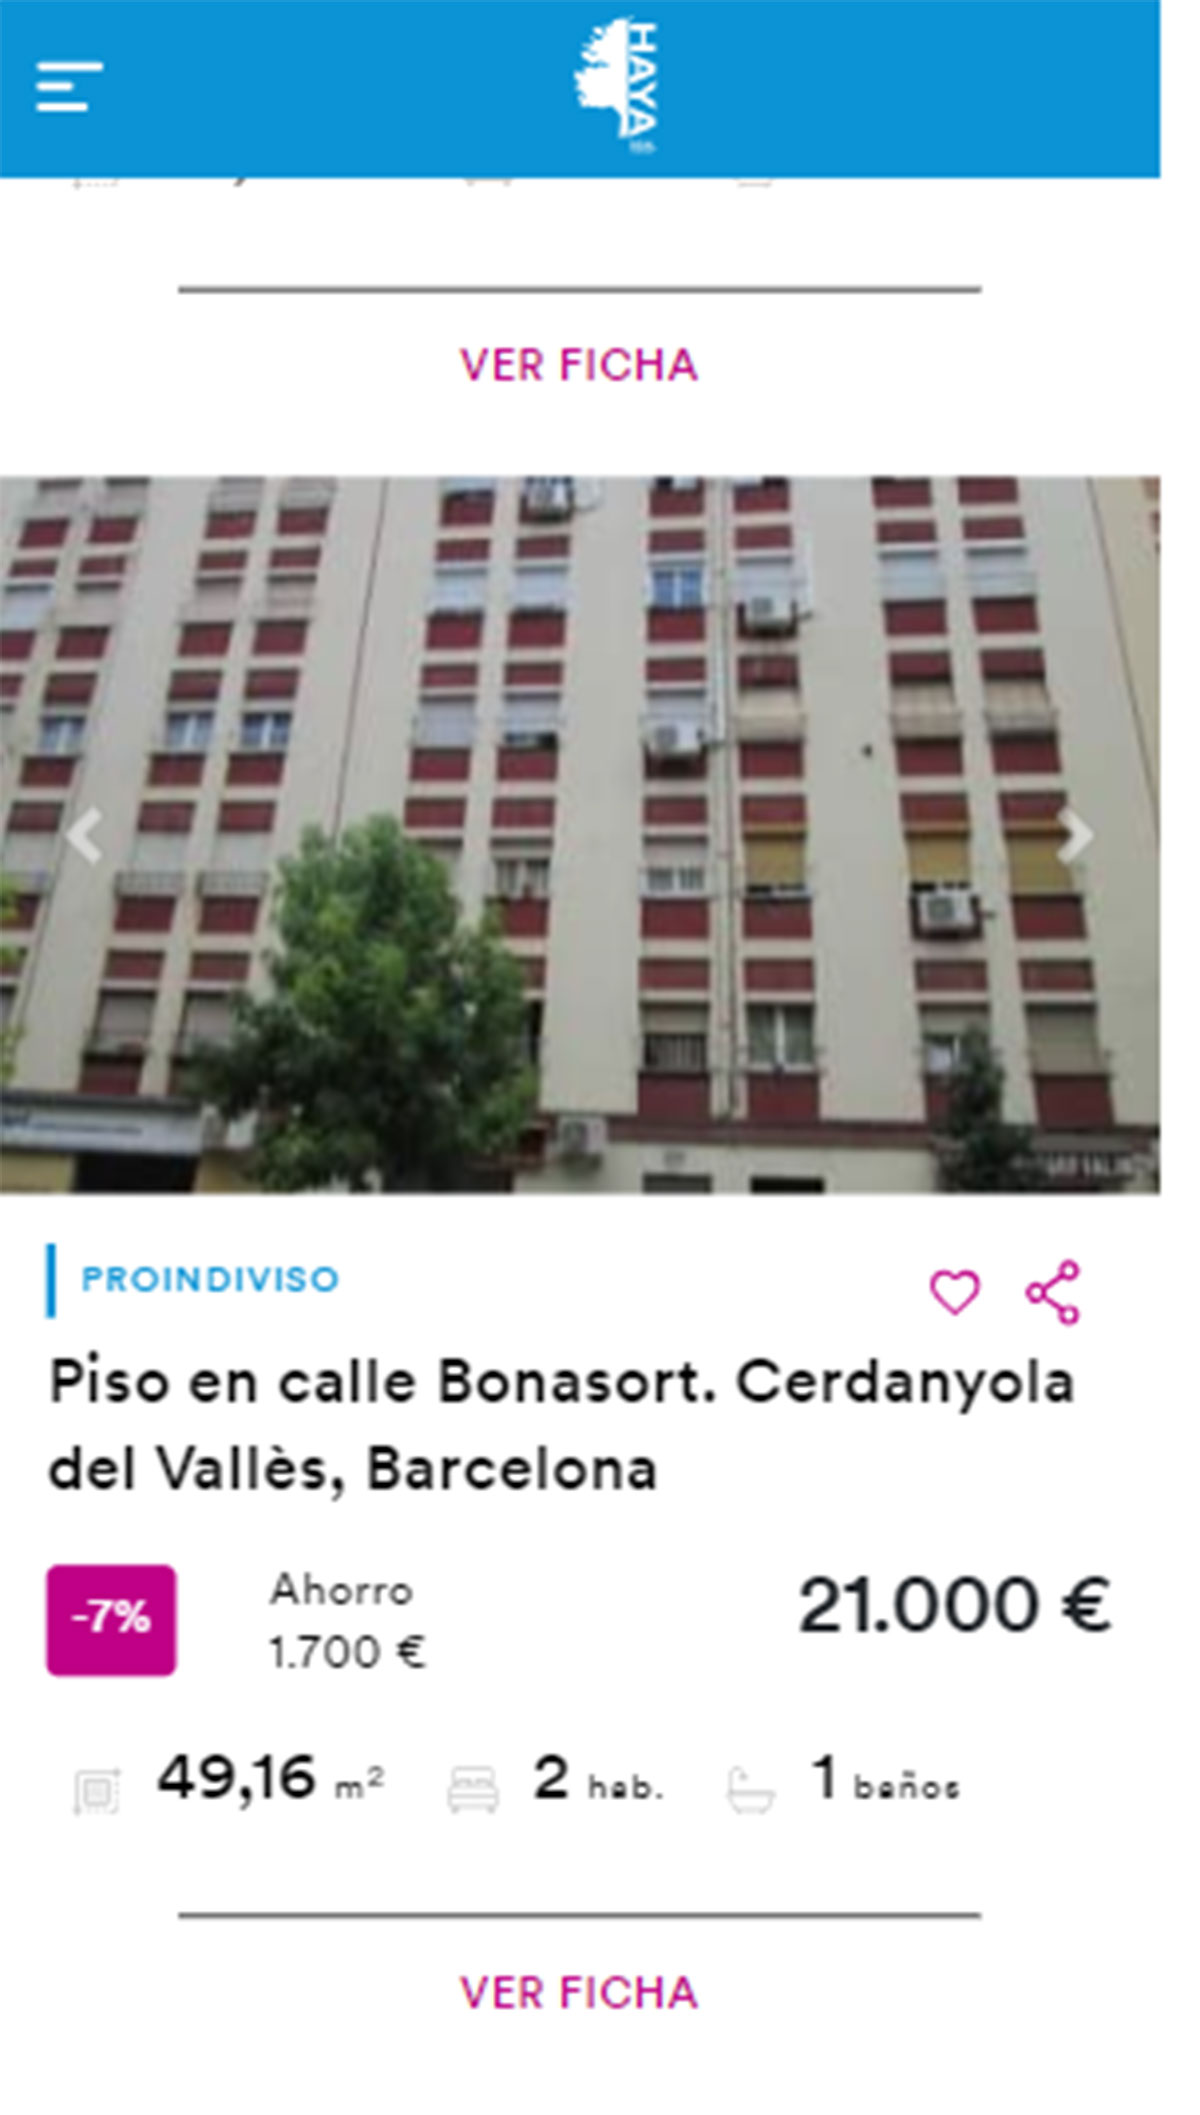 Piso en Barcelona por 21.000 euros